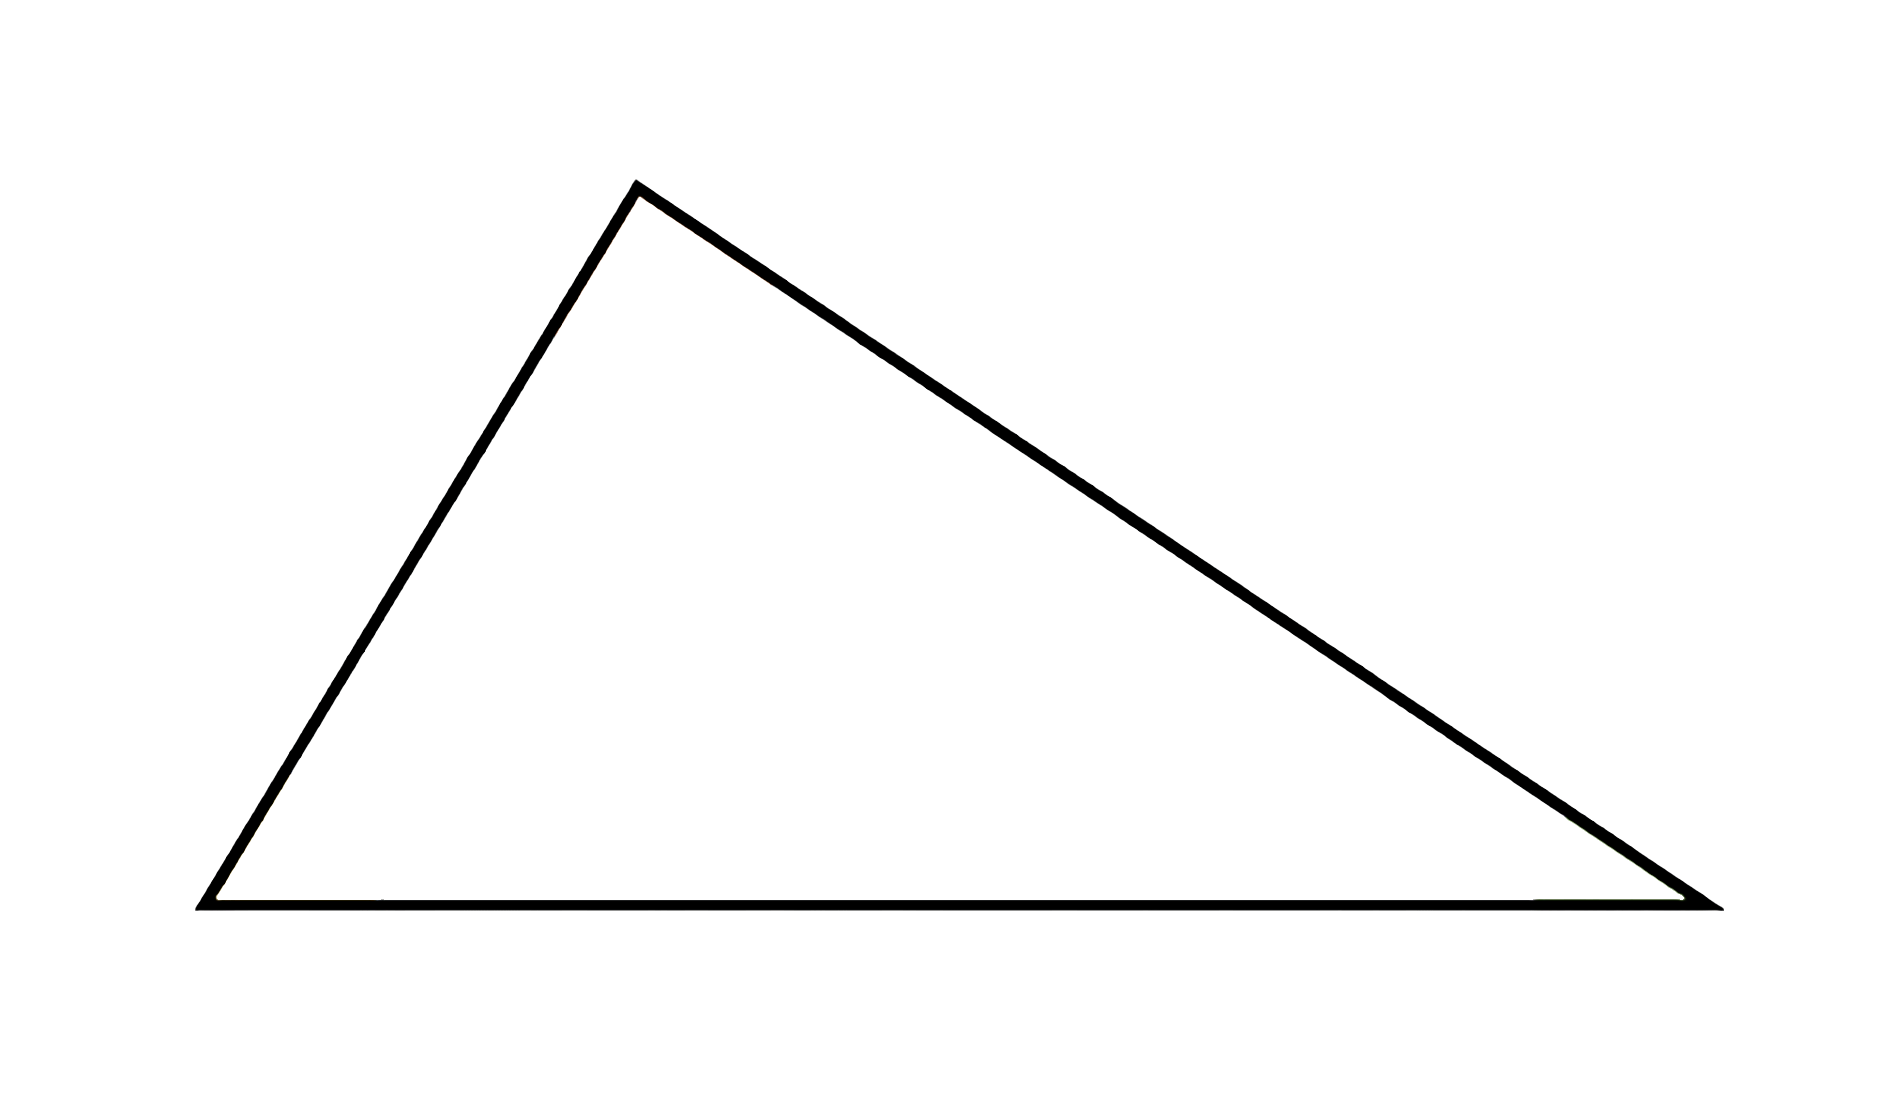 Figure geometriche - Figura geometrica piana - Triangolo scaleno